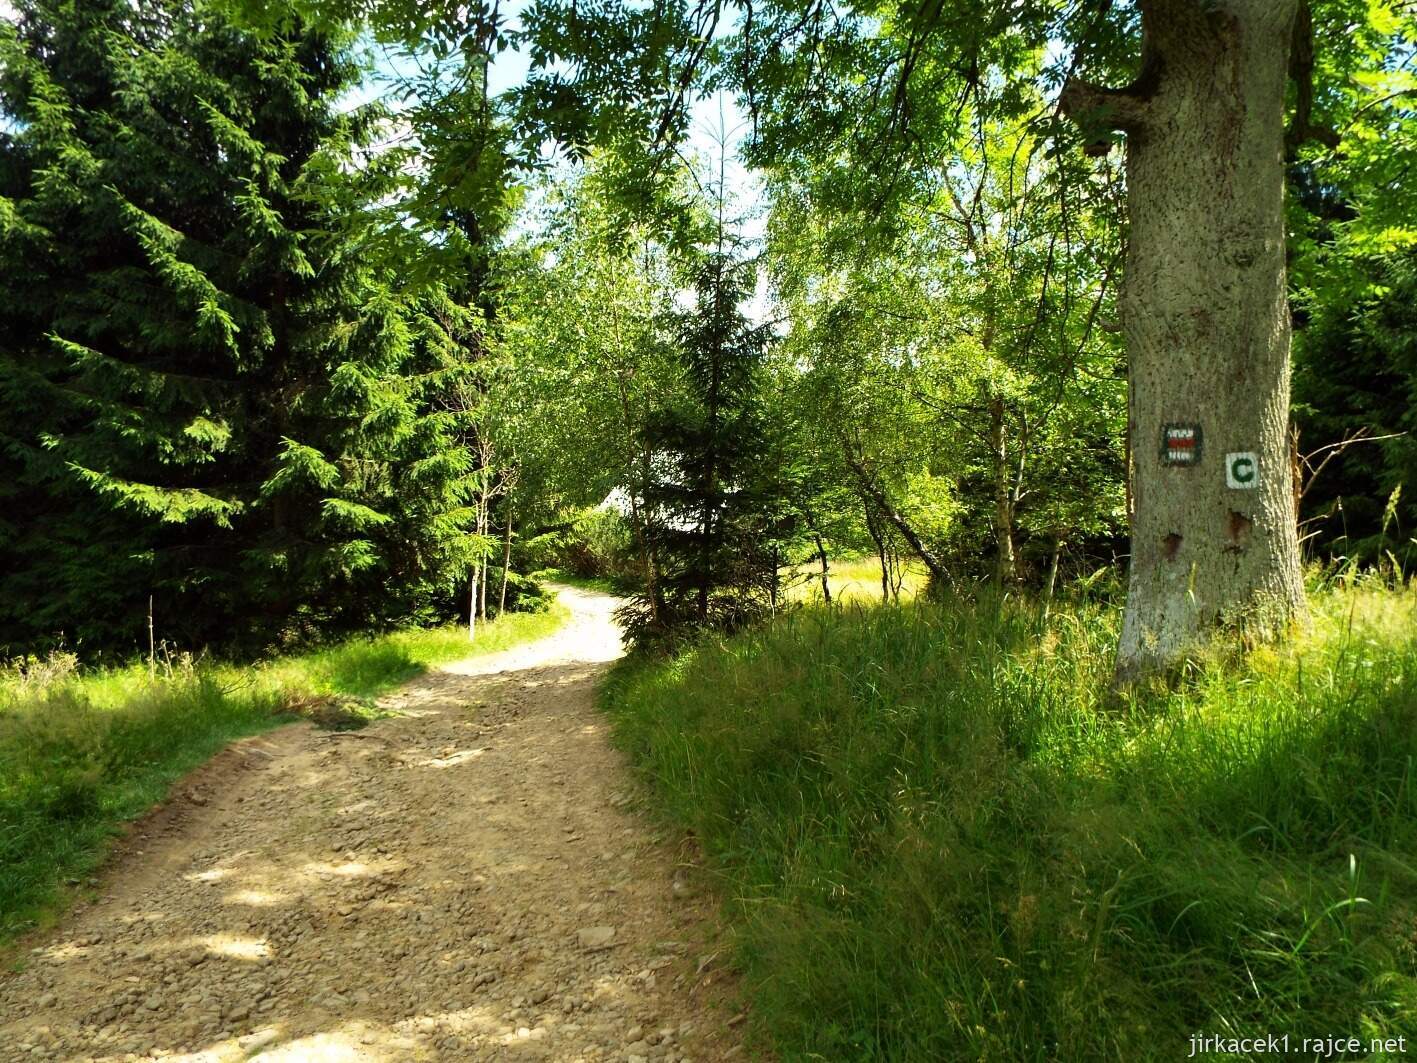 038 - cesta z Masarykovy chaty na Kmínek 03 - závěr prudkého klesání na kamenité cestě